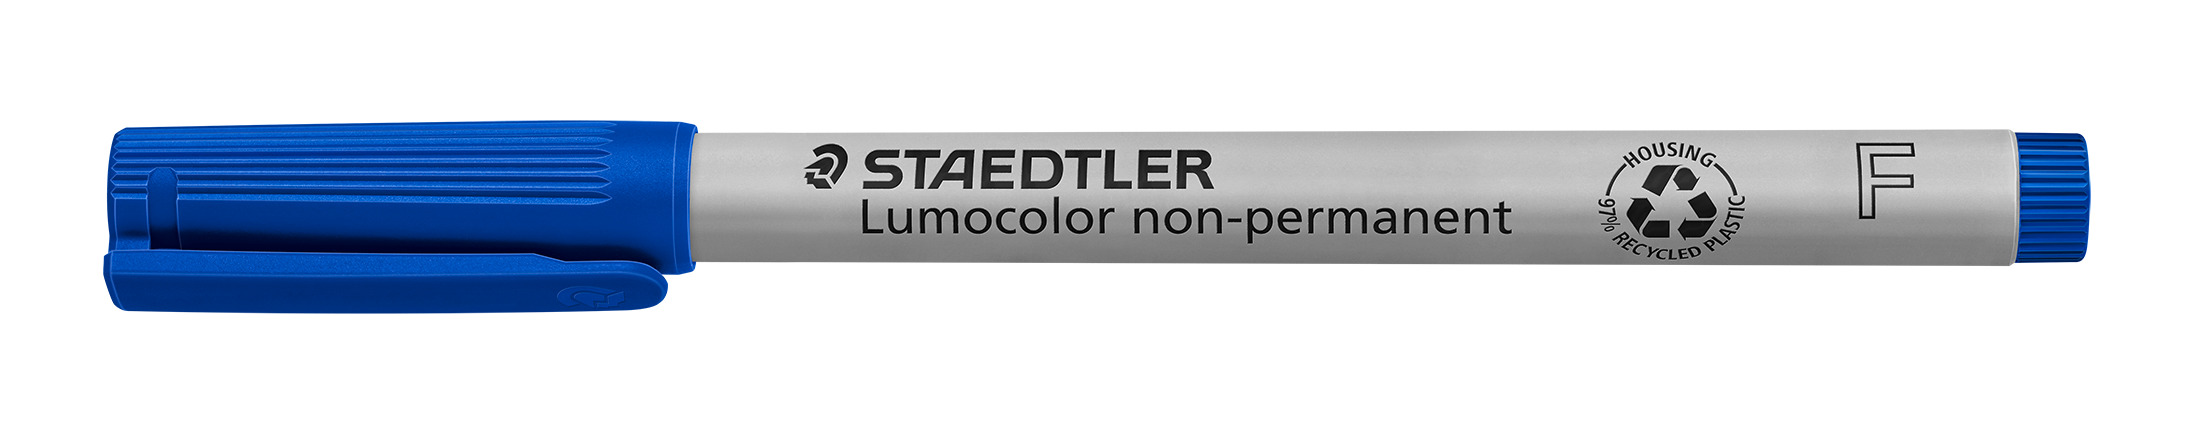 STAEDTLER® OH-Stift, Lumocolor® 316, F, nachfüllbar, non-permanent, Rundspitze, 0,6 mm, Schaftfarbe: grau, Schreibfarbe: blau